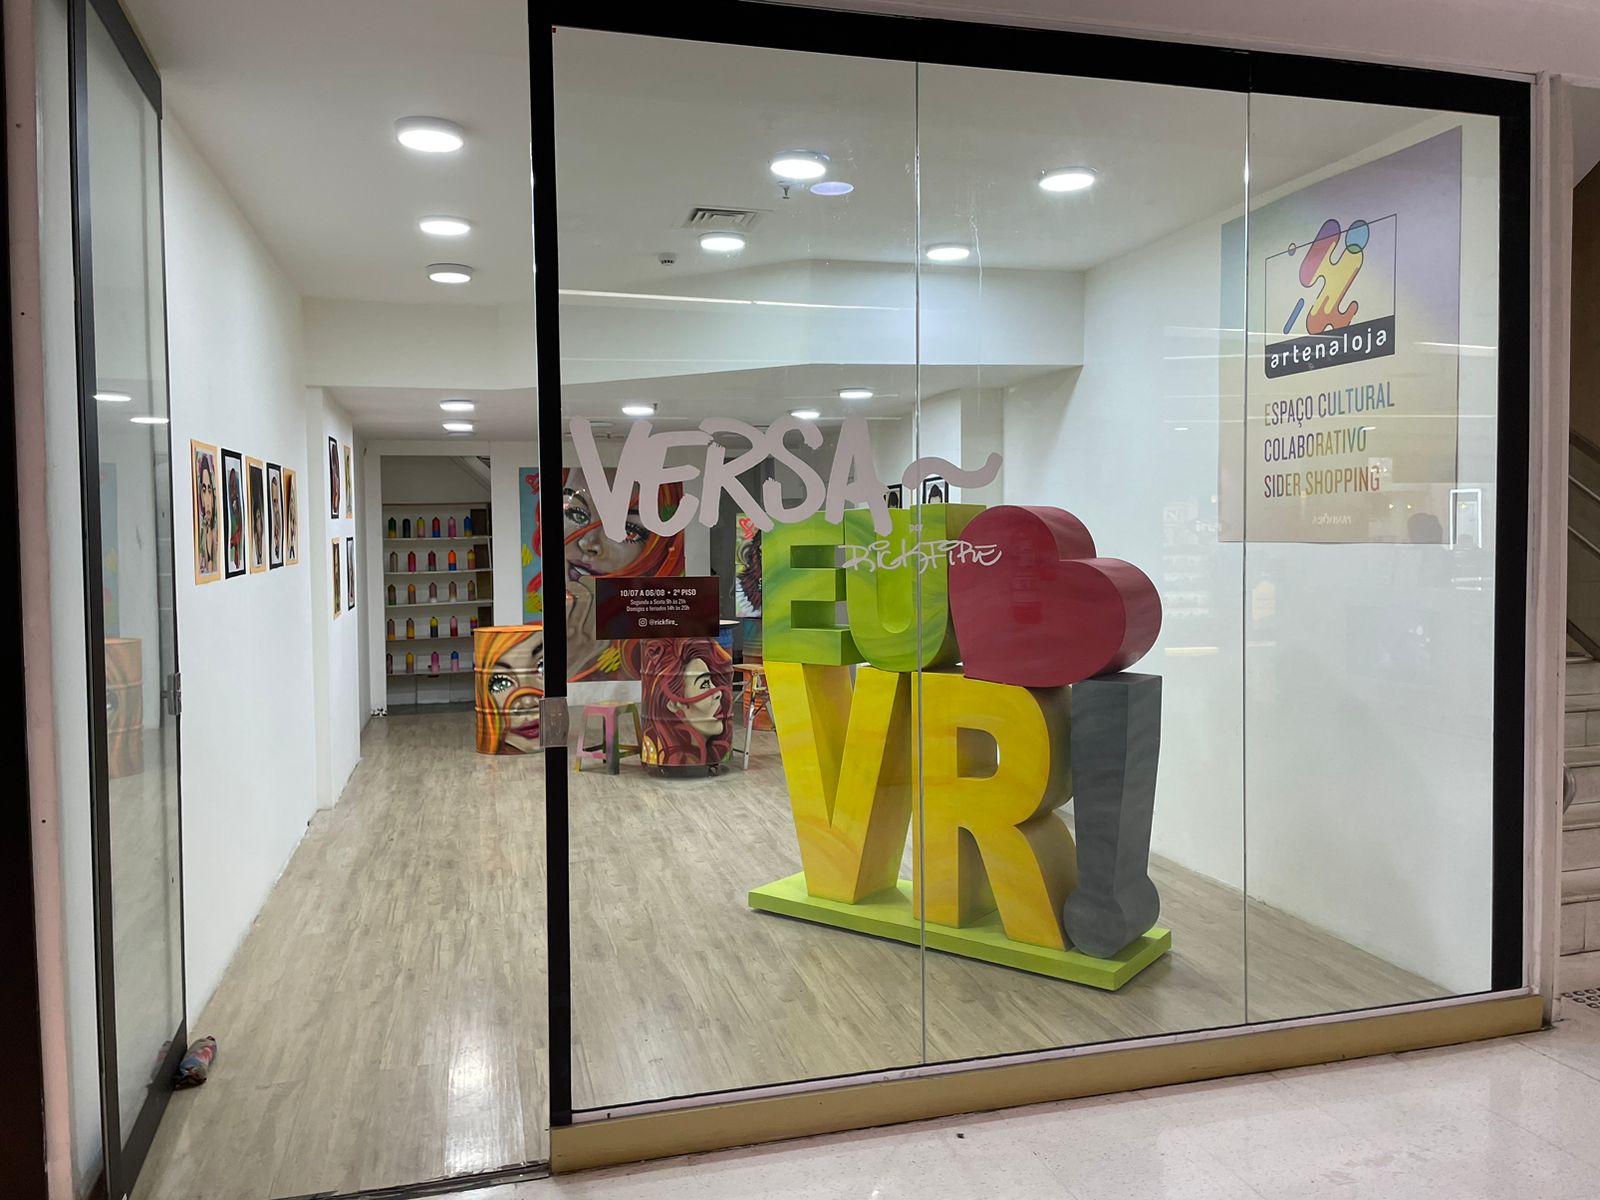 Sider Shopping comemora o aniversário de Volta Redonda com arte